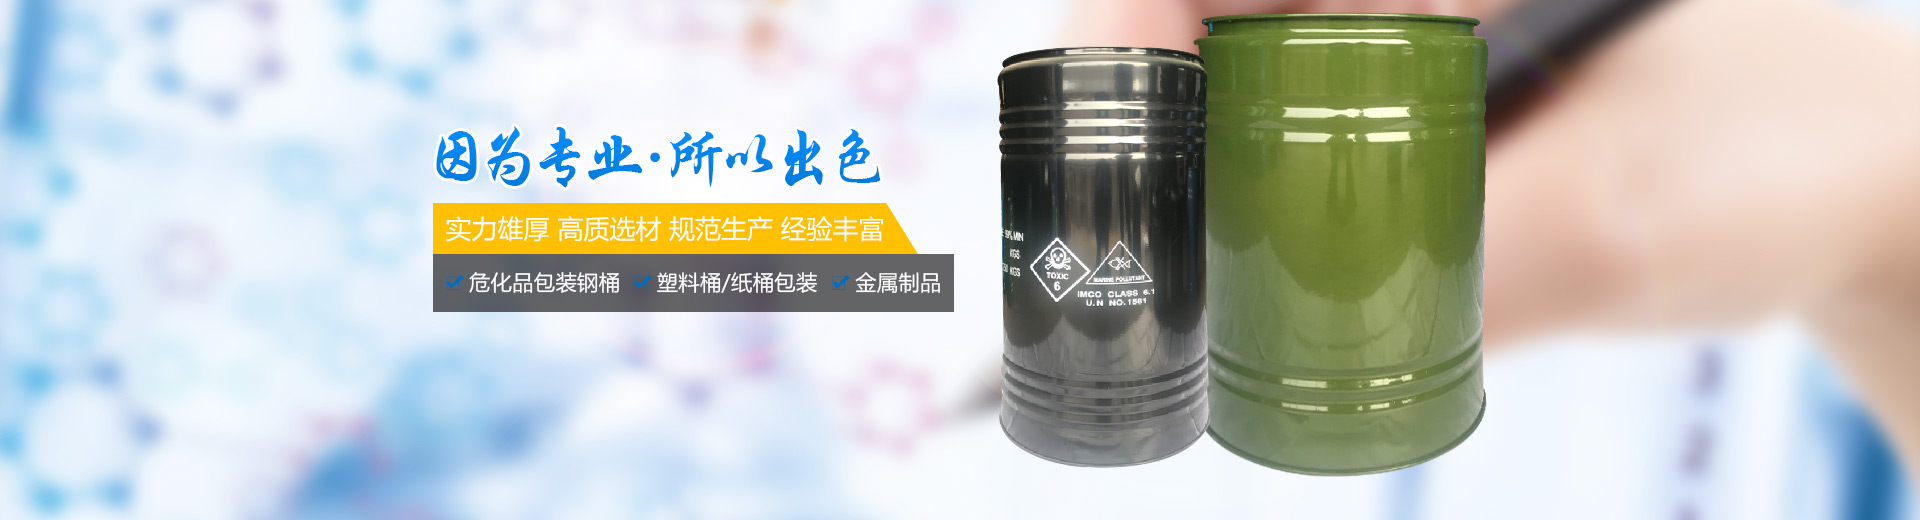 衡陽市迪偉包裝有限公司_危險品包裝鋼桶生產|衡陽鋼桶生產|危險化學品包裝